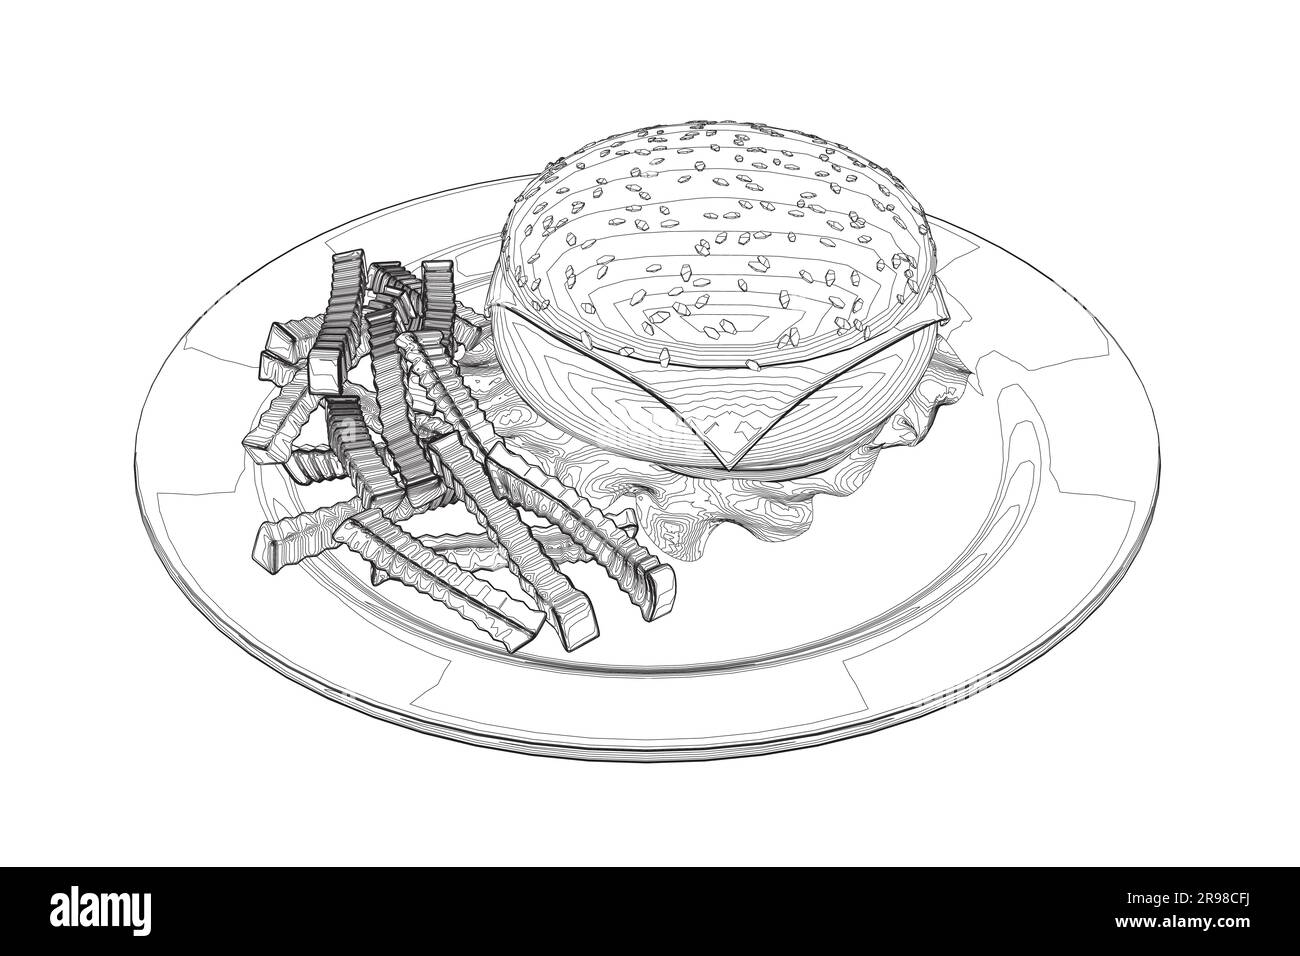 Cheeseburger auf dem Teller. Konturierung großer Humburger mit Schnitzeln, Käse, Tomaten, Salat. amerikanisches Essen. Vektor-Darstellungselement mit Humburge Stock Vektor